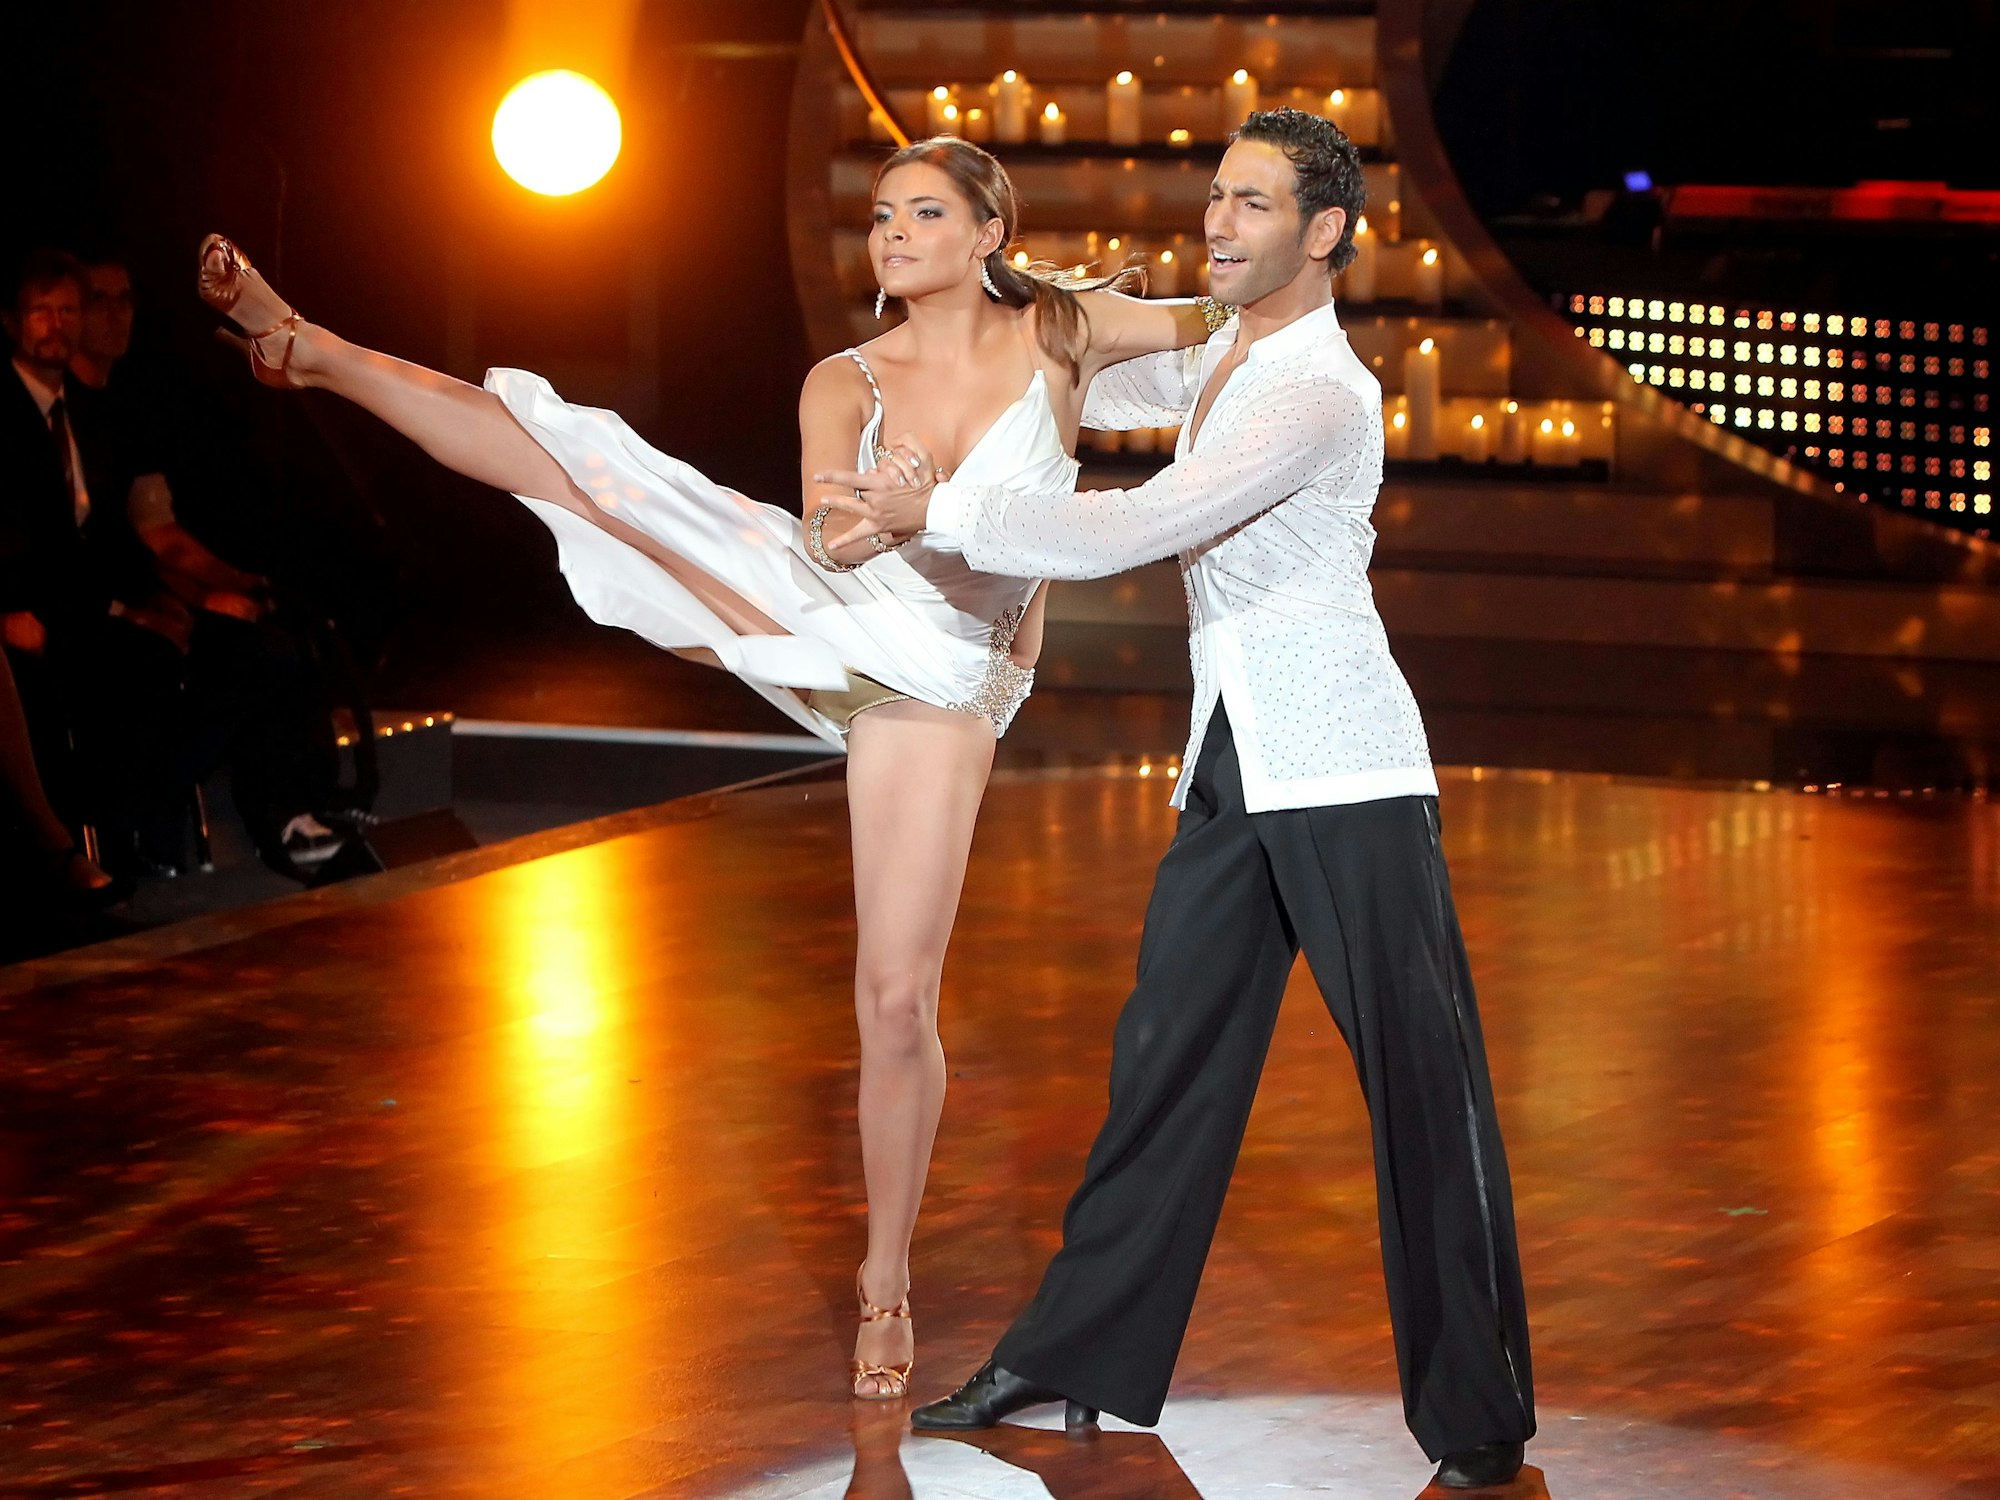 Schauspielerin Sophia Thomalla und Profitänzer Massimo Sinató treten am 28. Mai 2010 bei „Let's Dance“ auf.